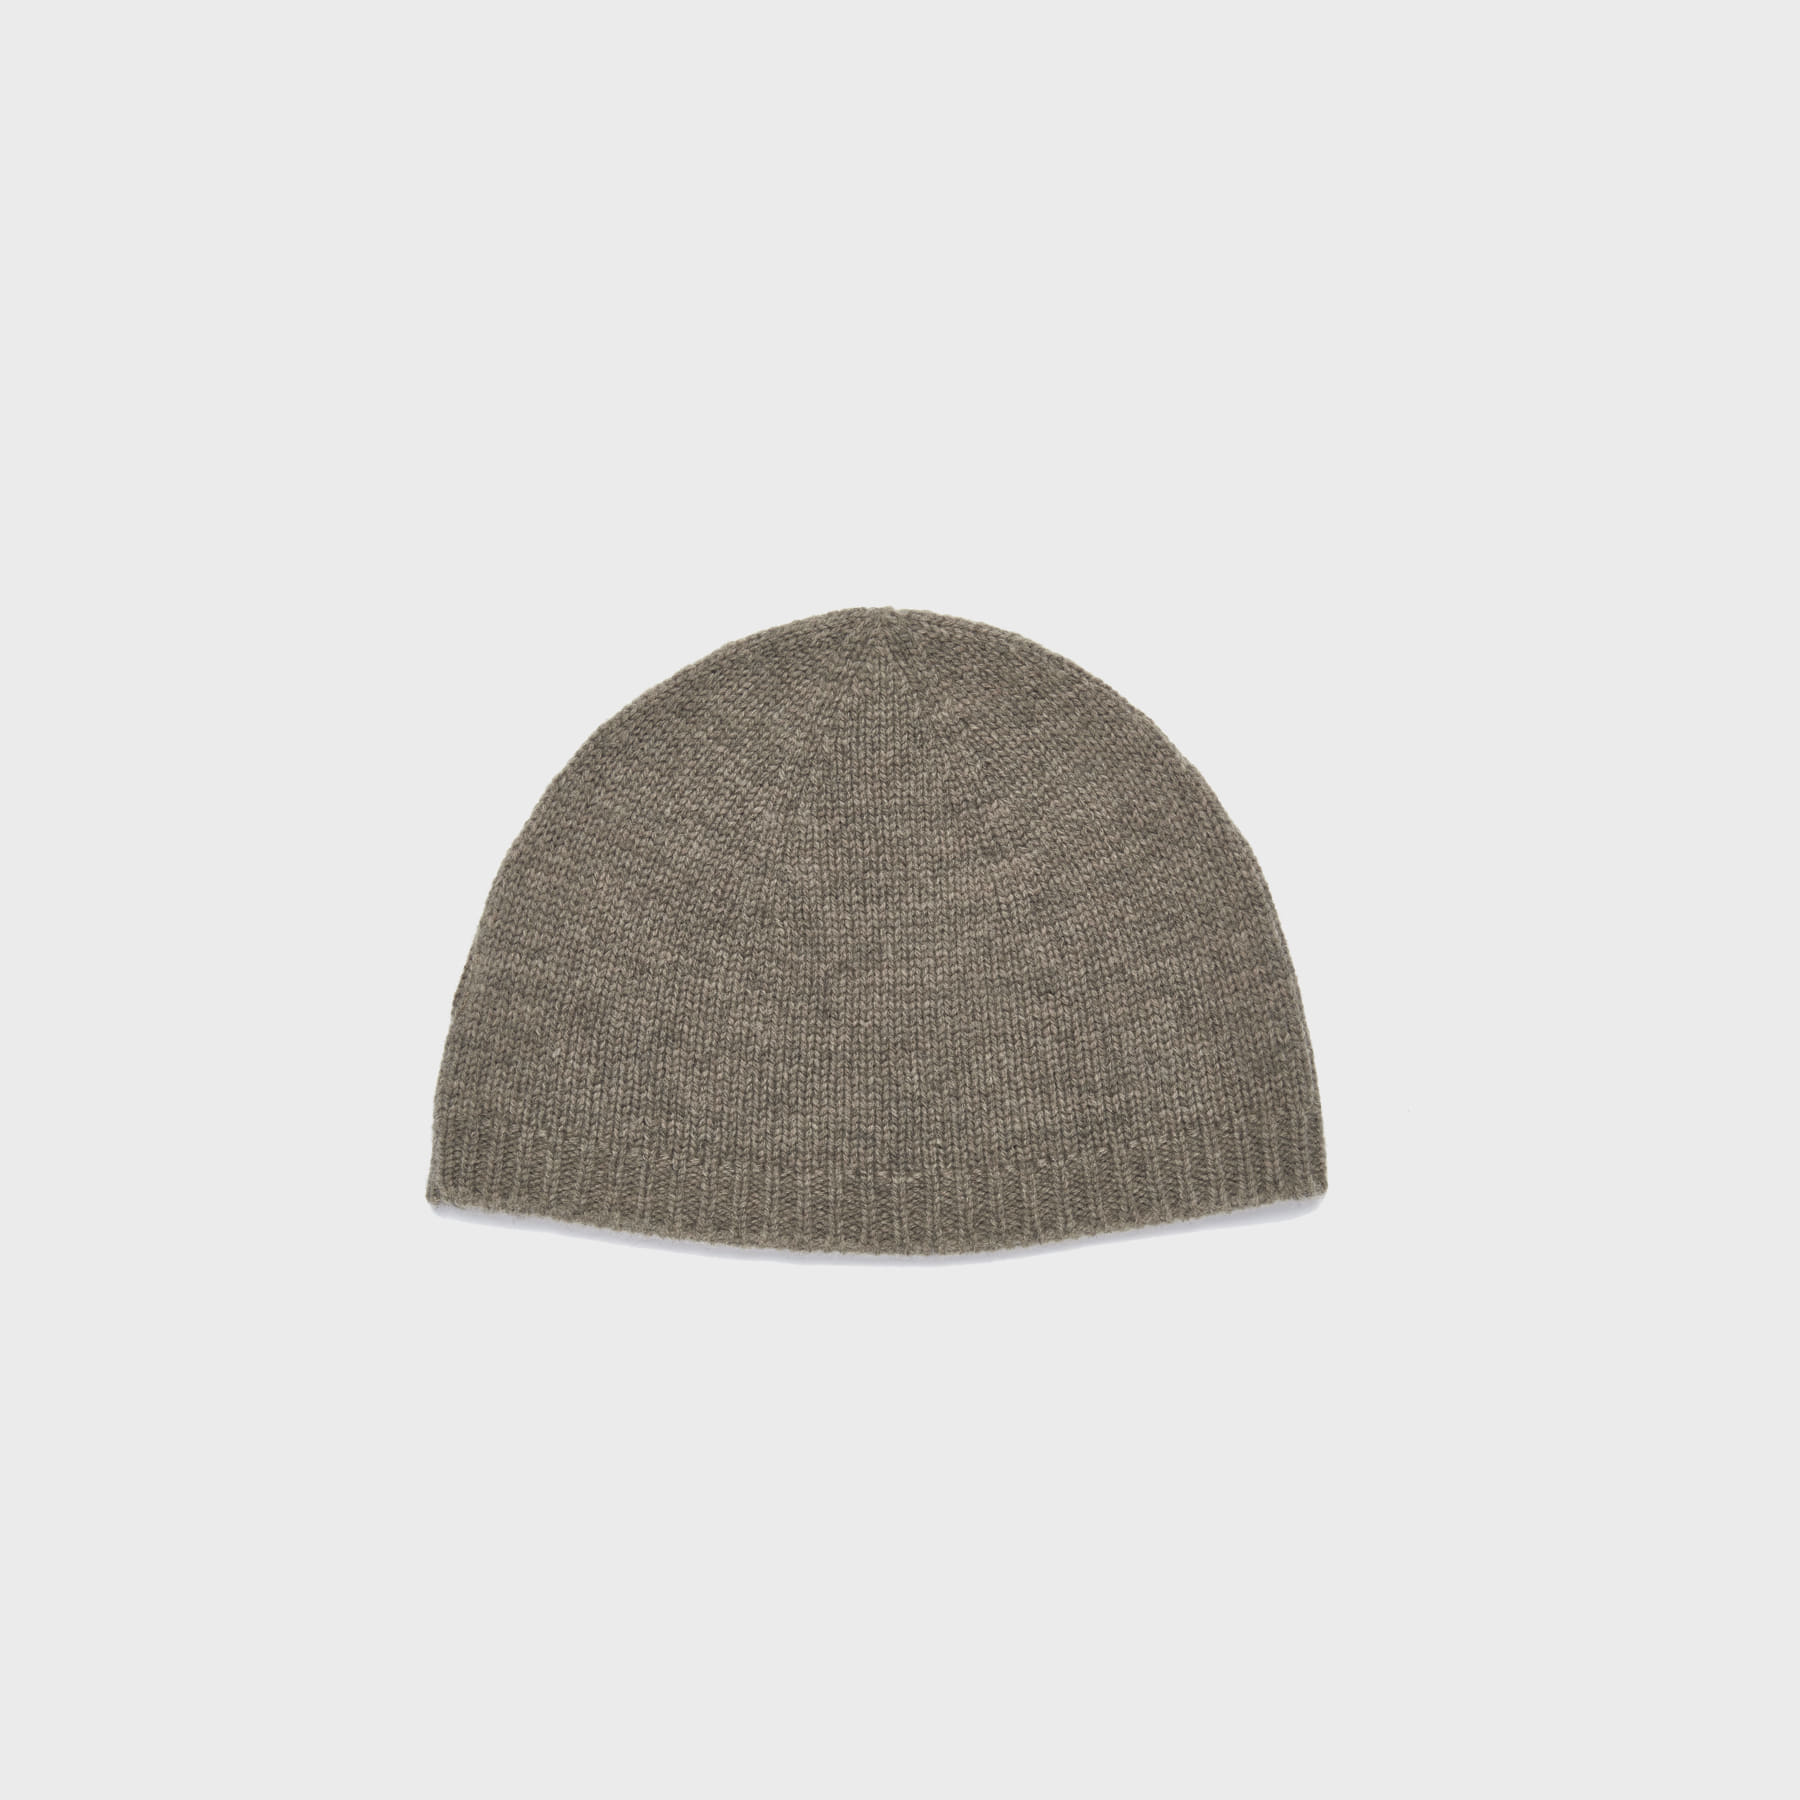 Wool watch cap (brown)